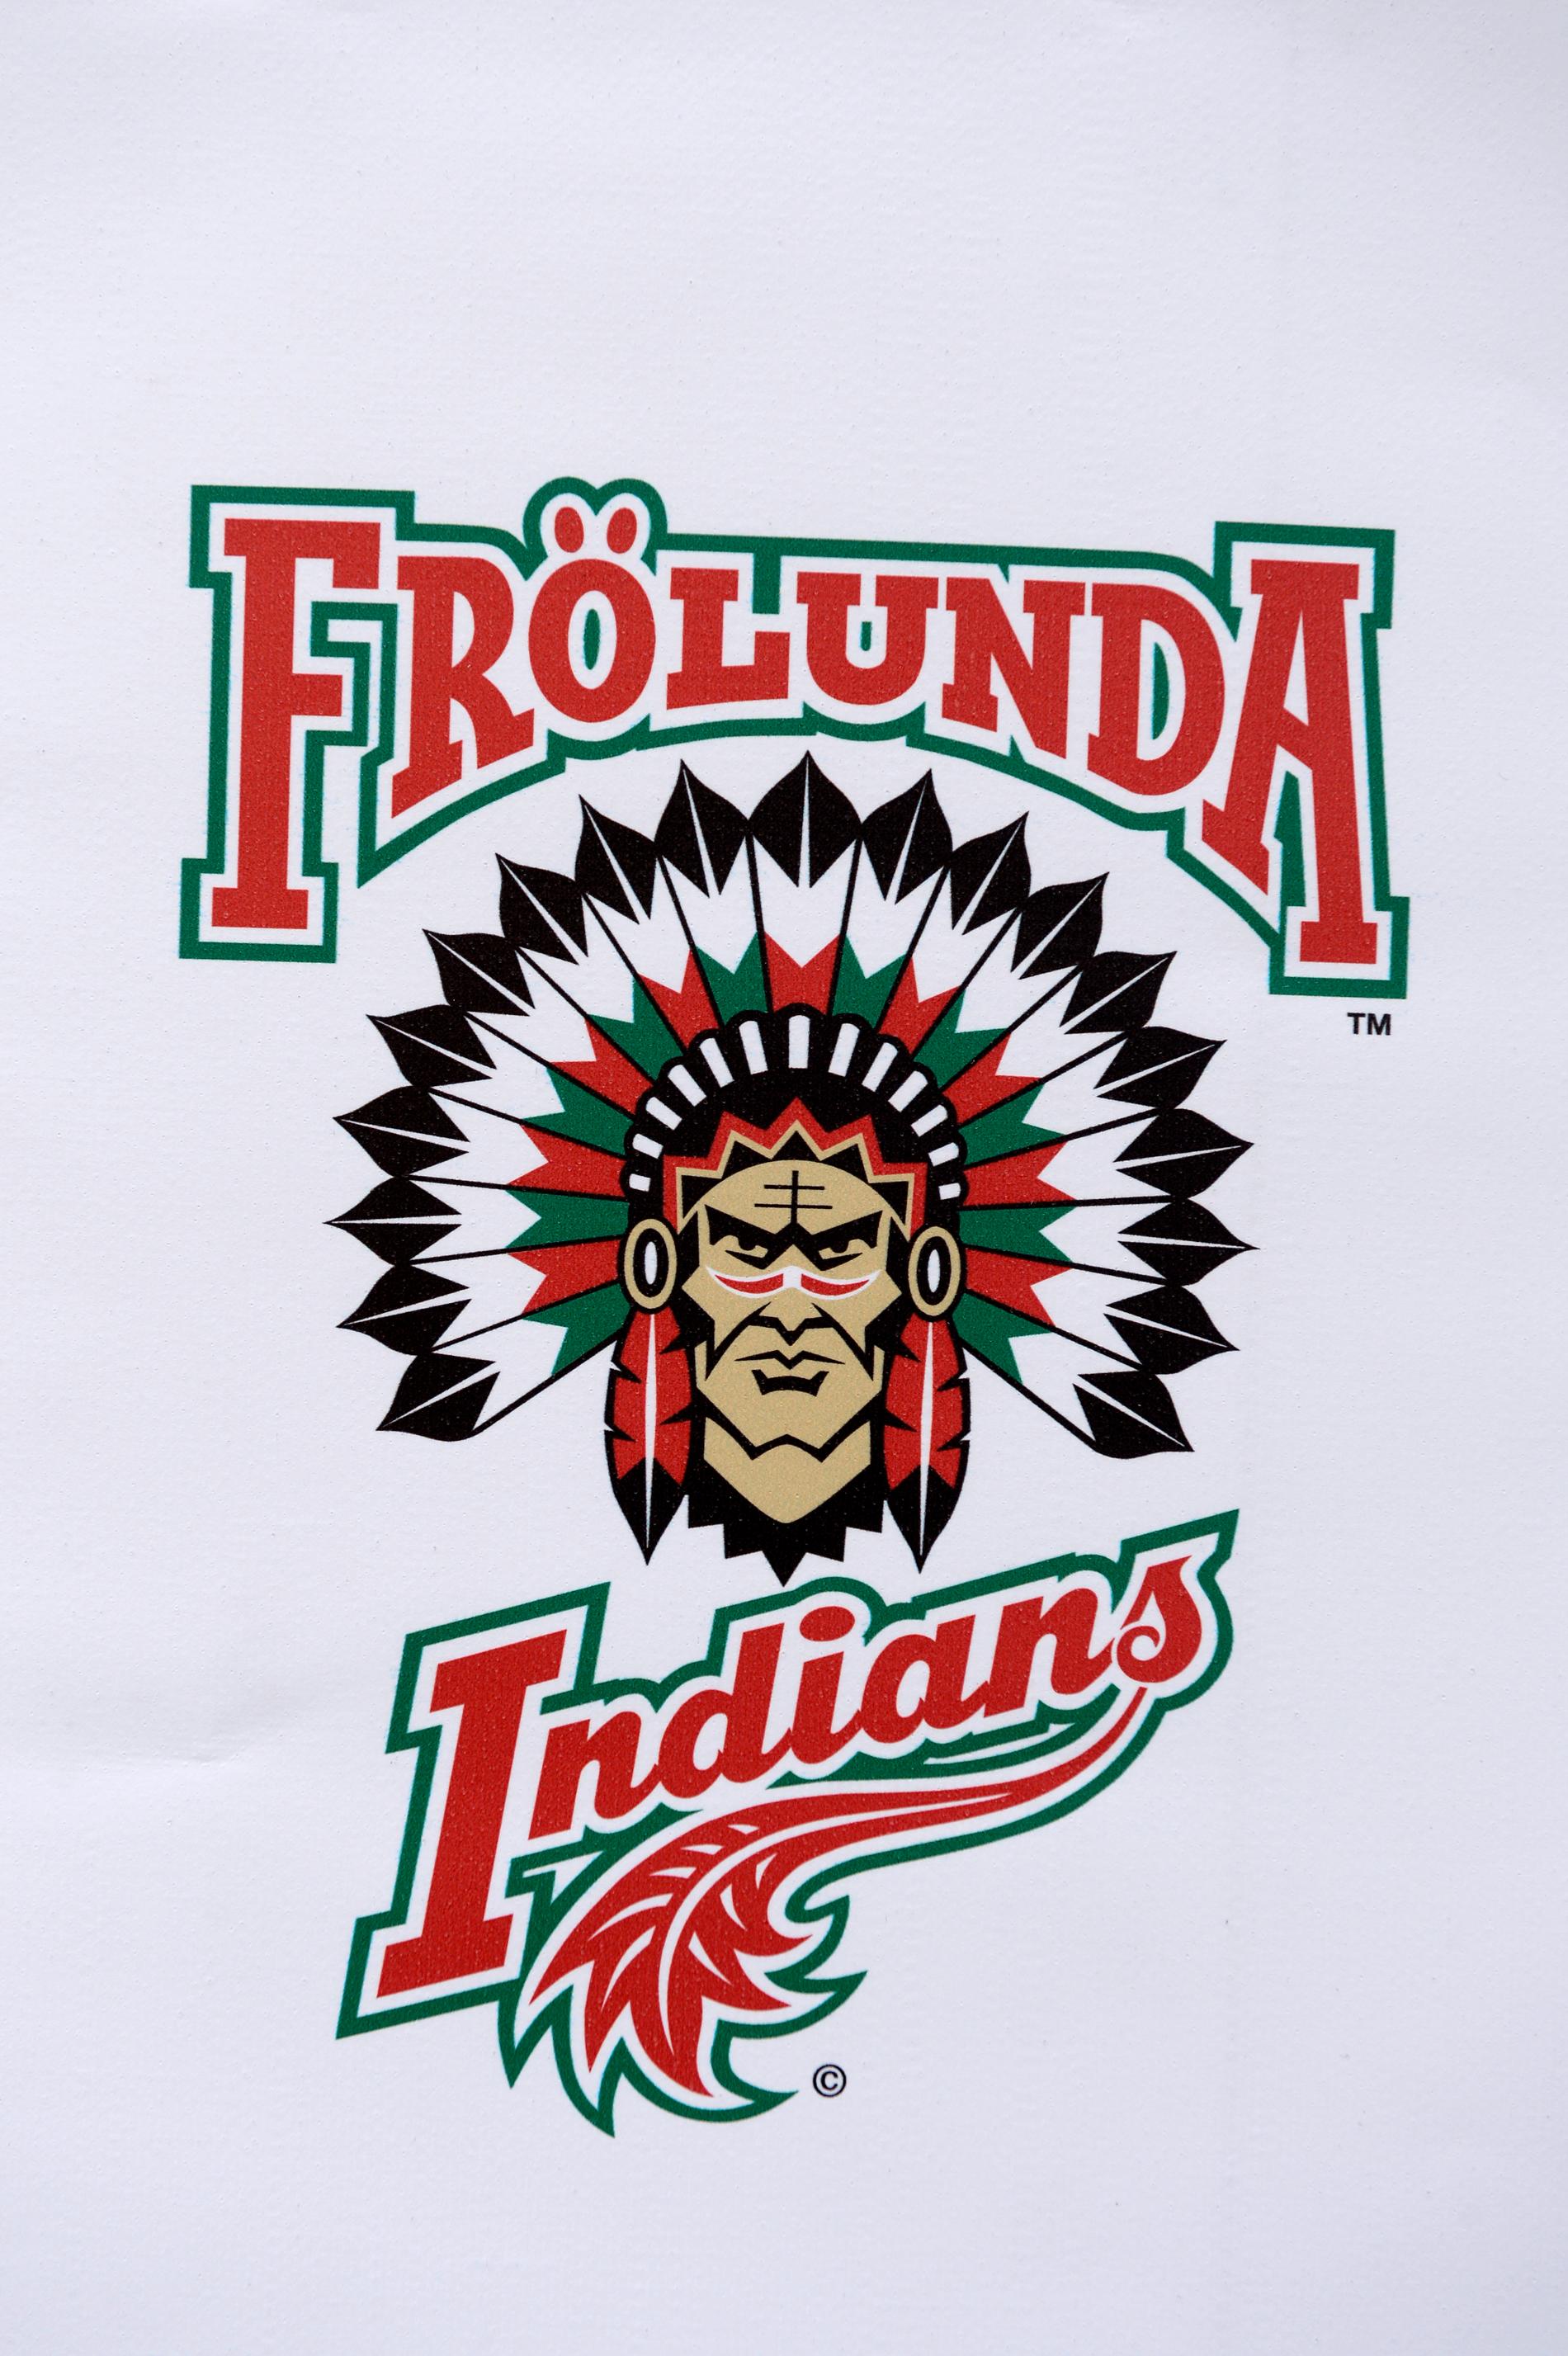 Hockeylaget Frölunda har beslutat sig för att skrota "indianen" i sitt namn och logotyp.